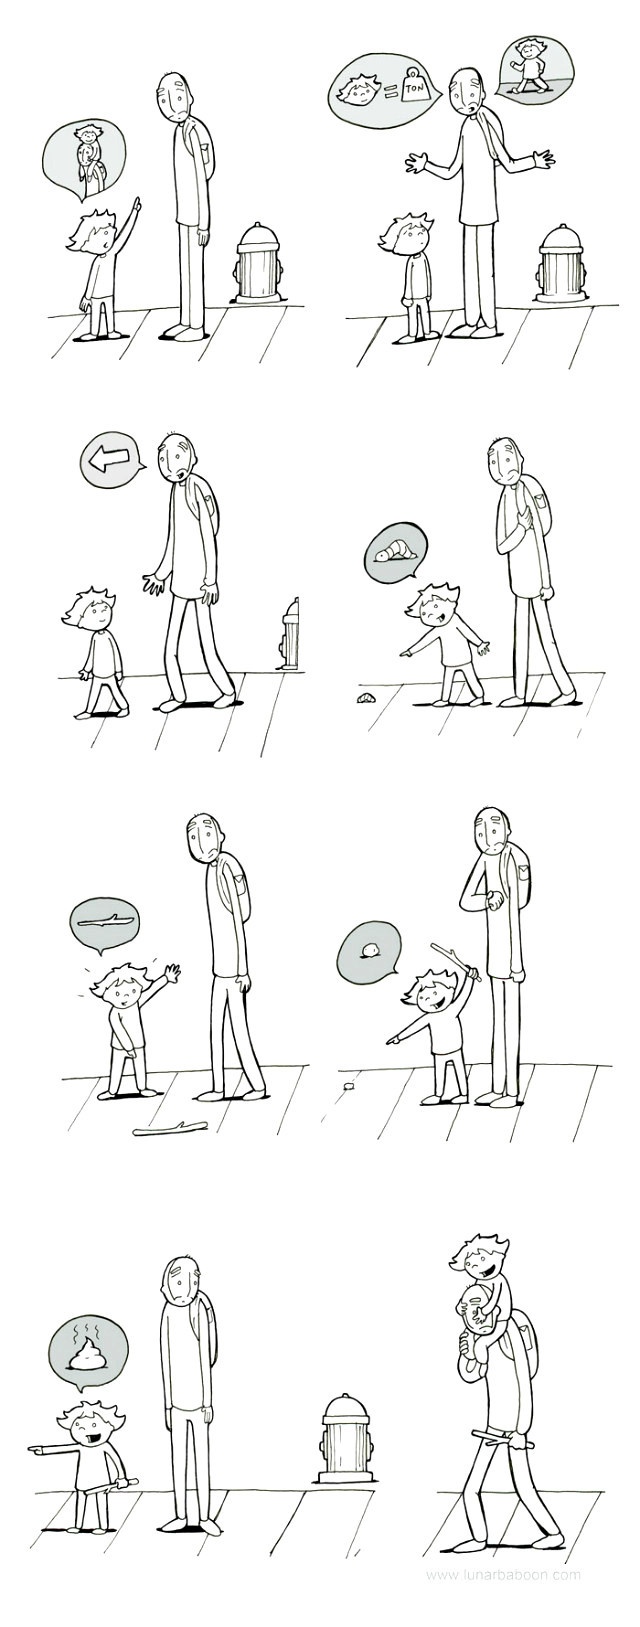 Комиксы о семье и детях (20 картинок)